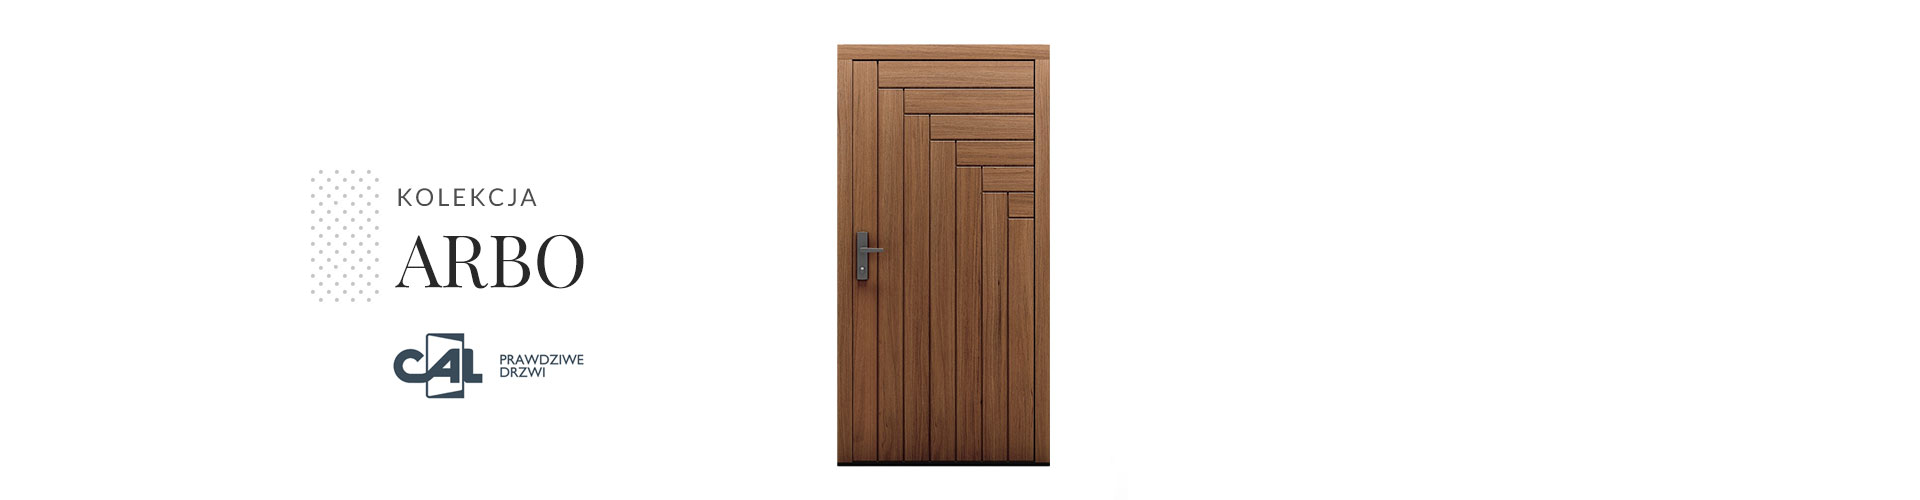 Kolekcja drzwi drewnianych Arbo, model Pino